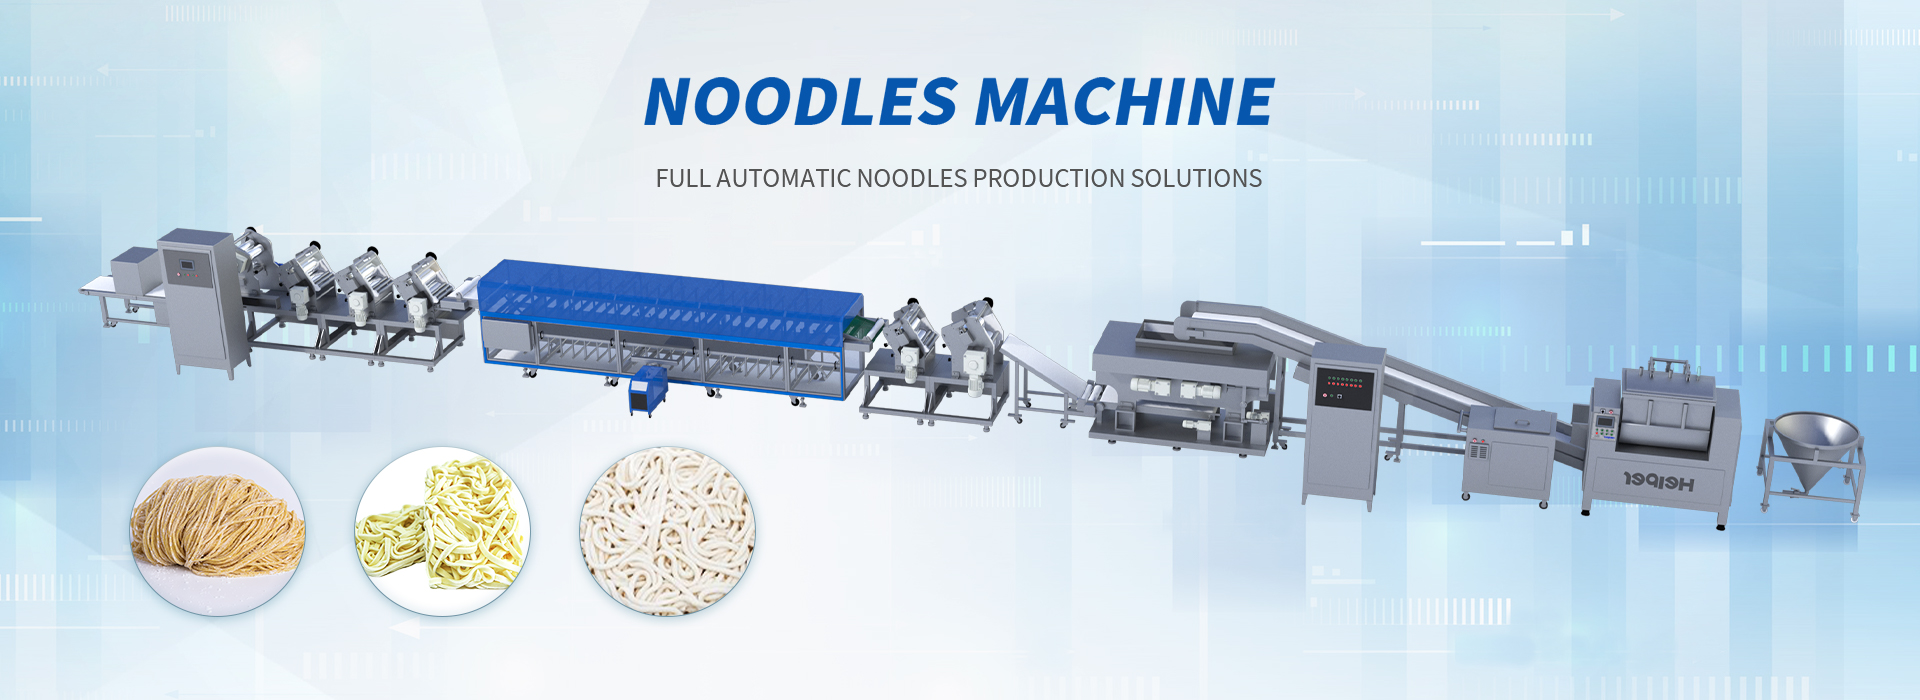 Ramen noodles production solutions